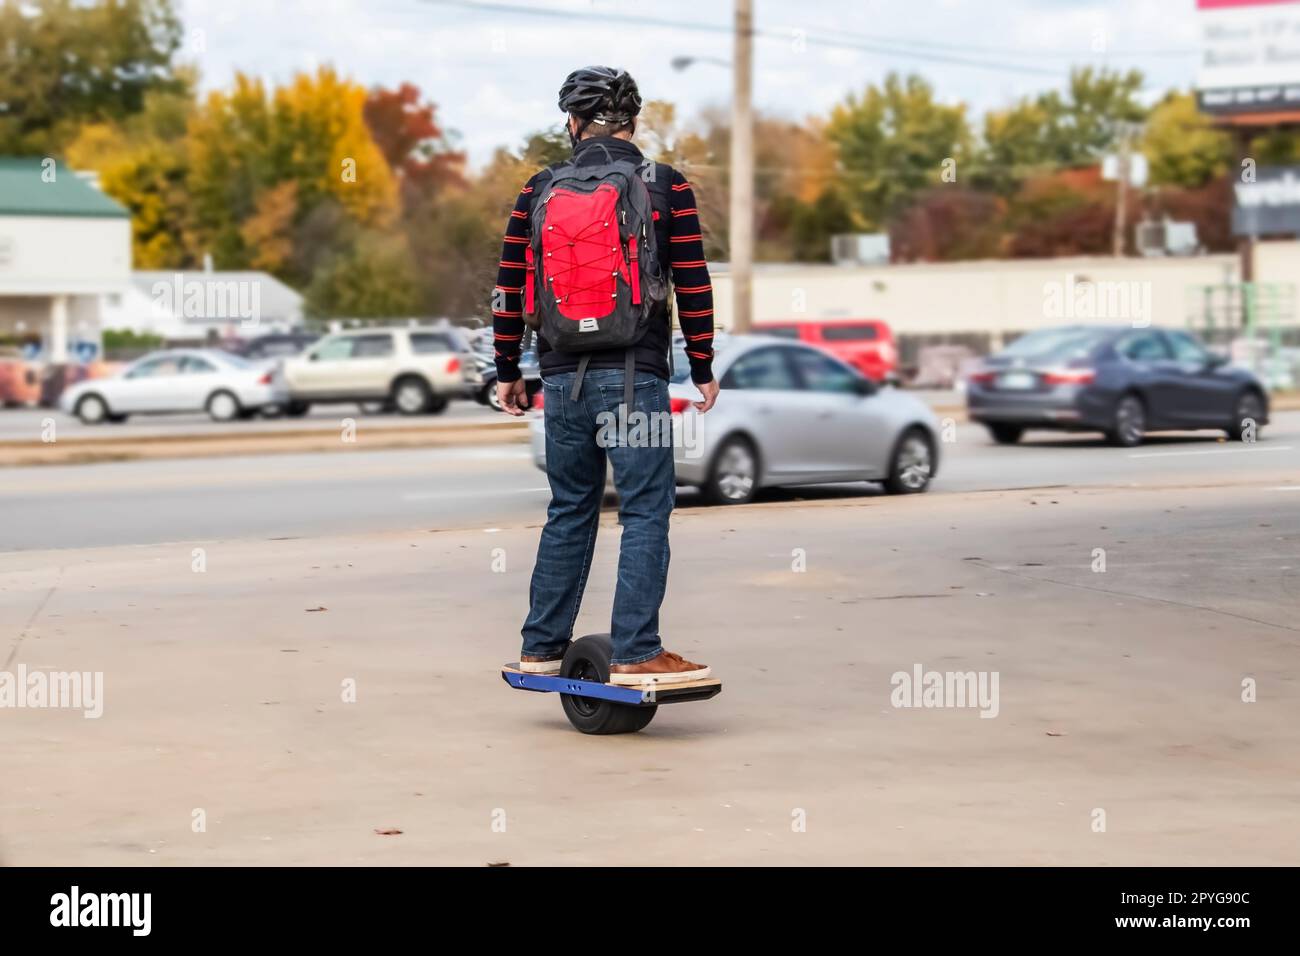 Homme avec casque et dos sur une roue de skateboard motorisée sur le trottoir dans la zone urbaine avec des voitures sur la rade et les magasins et les arbres d'automne en arrière-plan - Banque D'Images